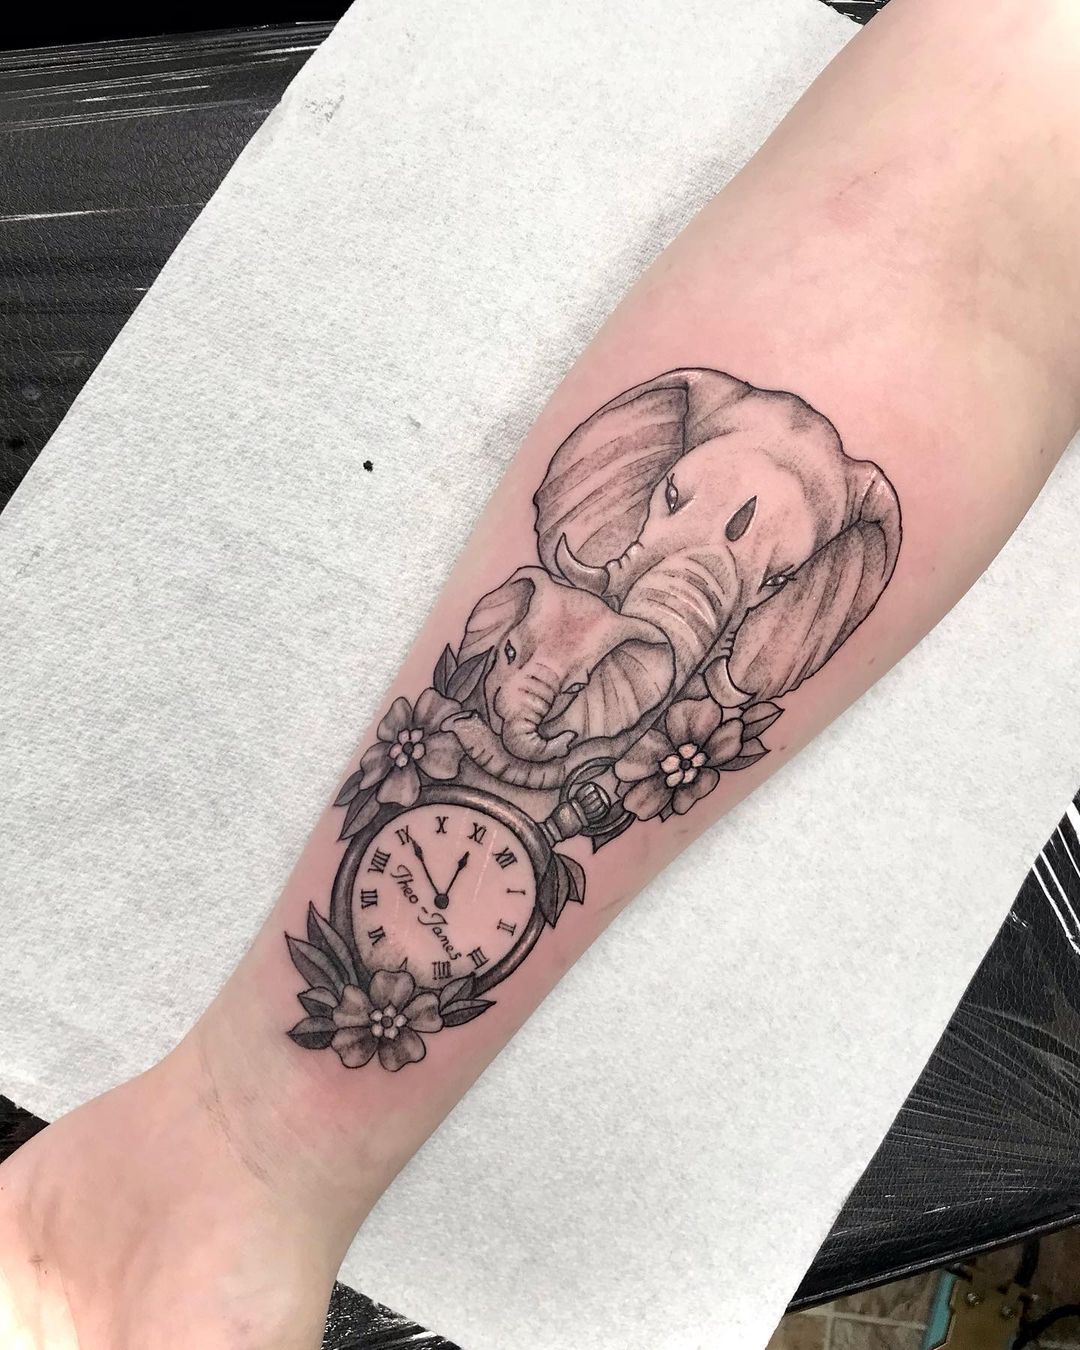 Elephant With Pocket Watch Tattoo